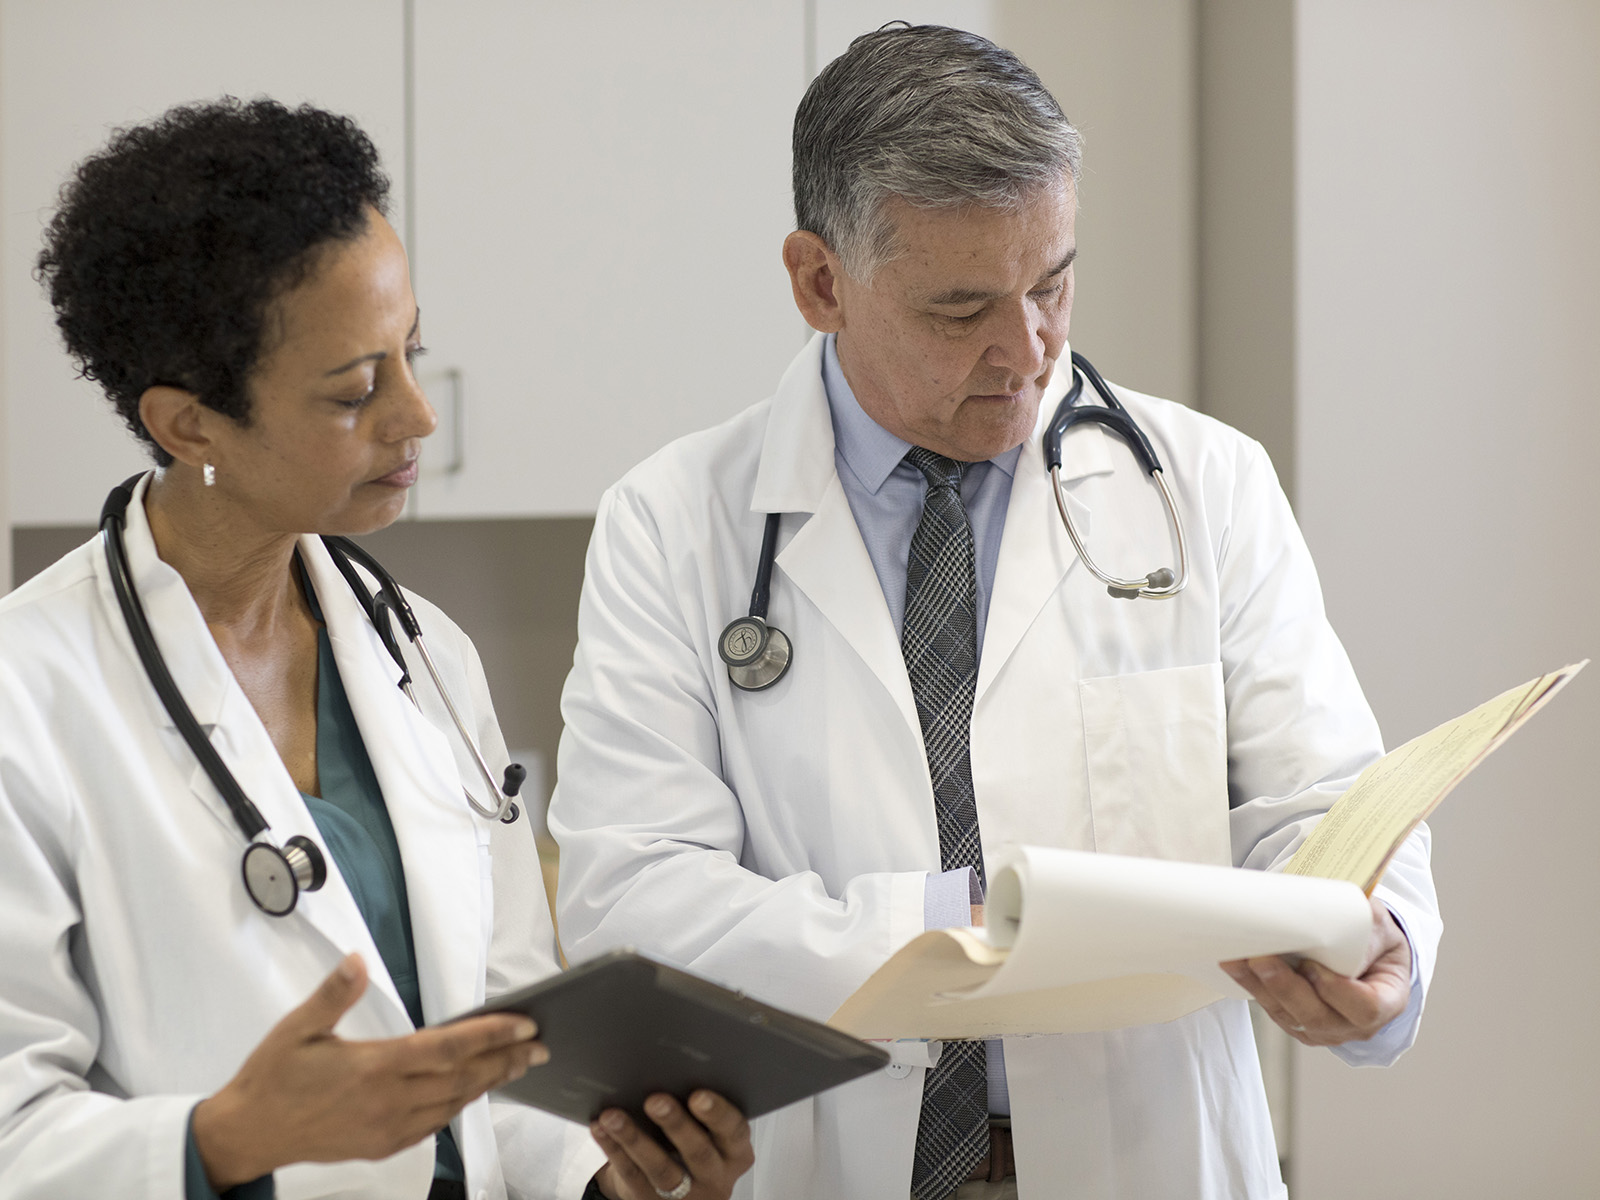 2 médicos con guardapolvos blancos conversan sobre la información en un expediente clínico.